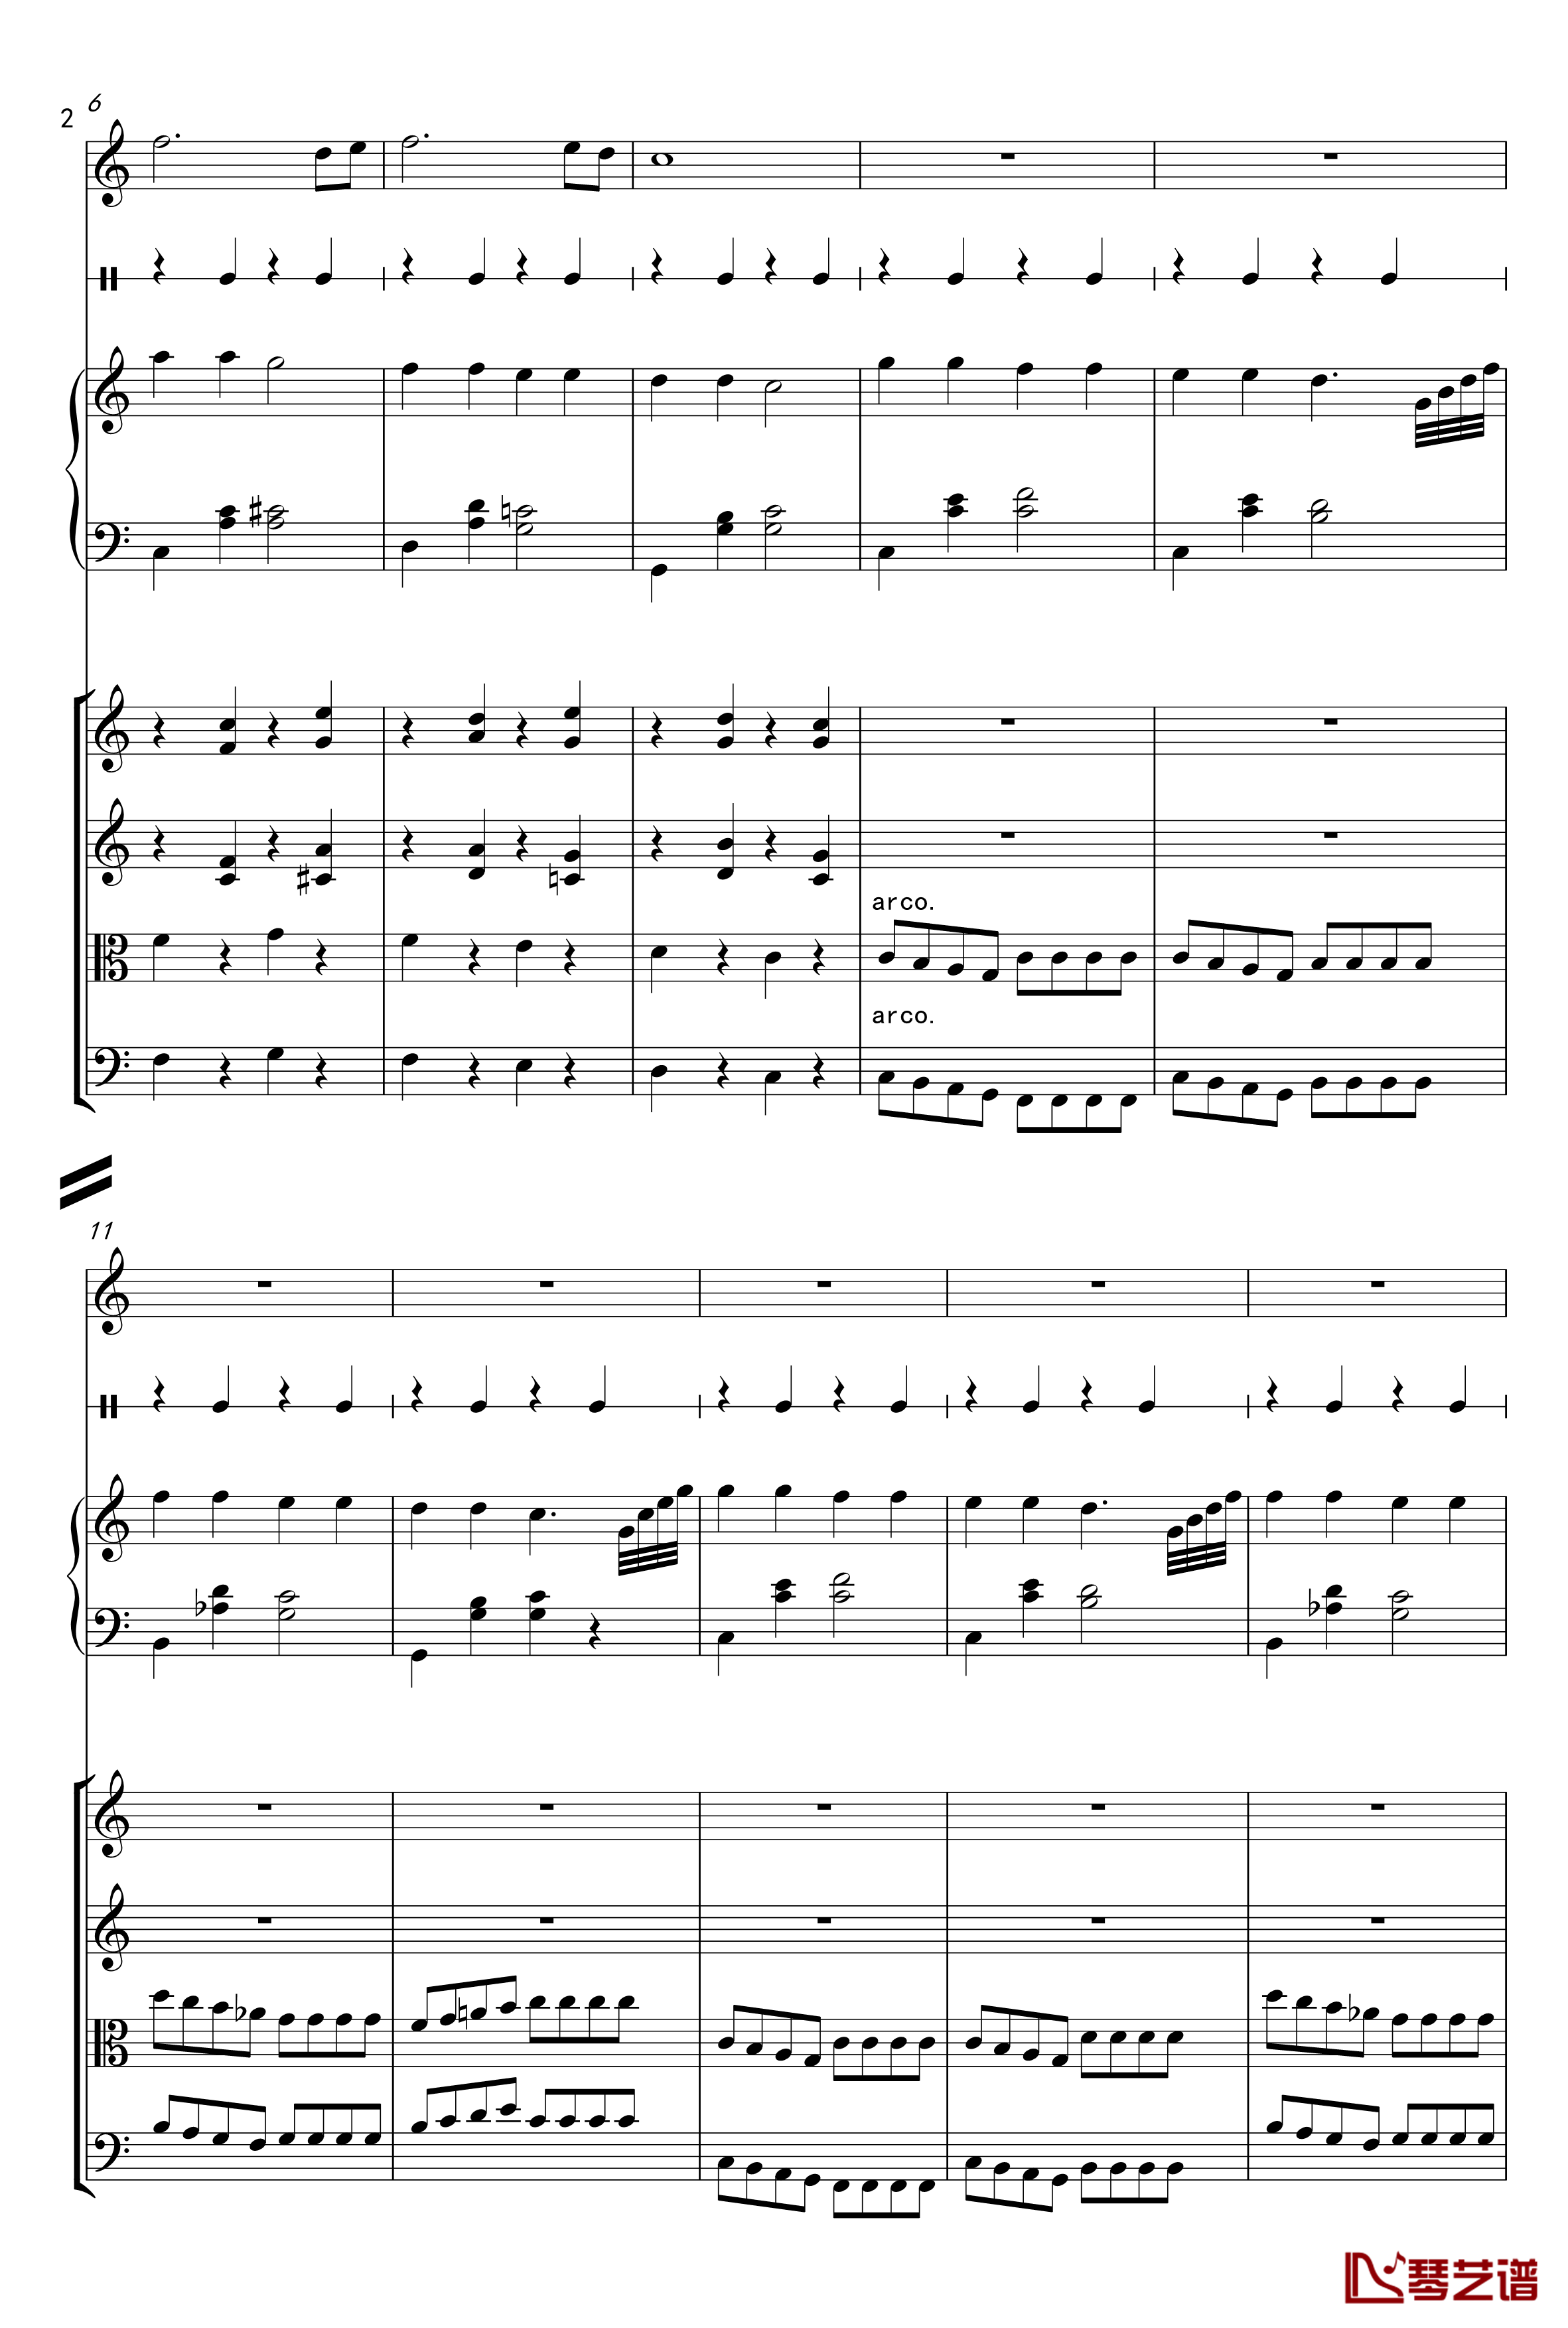 小星星弦乐钢琴谱-莫扎特2